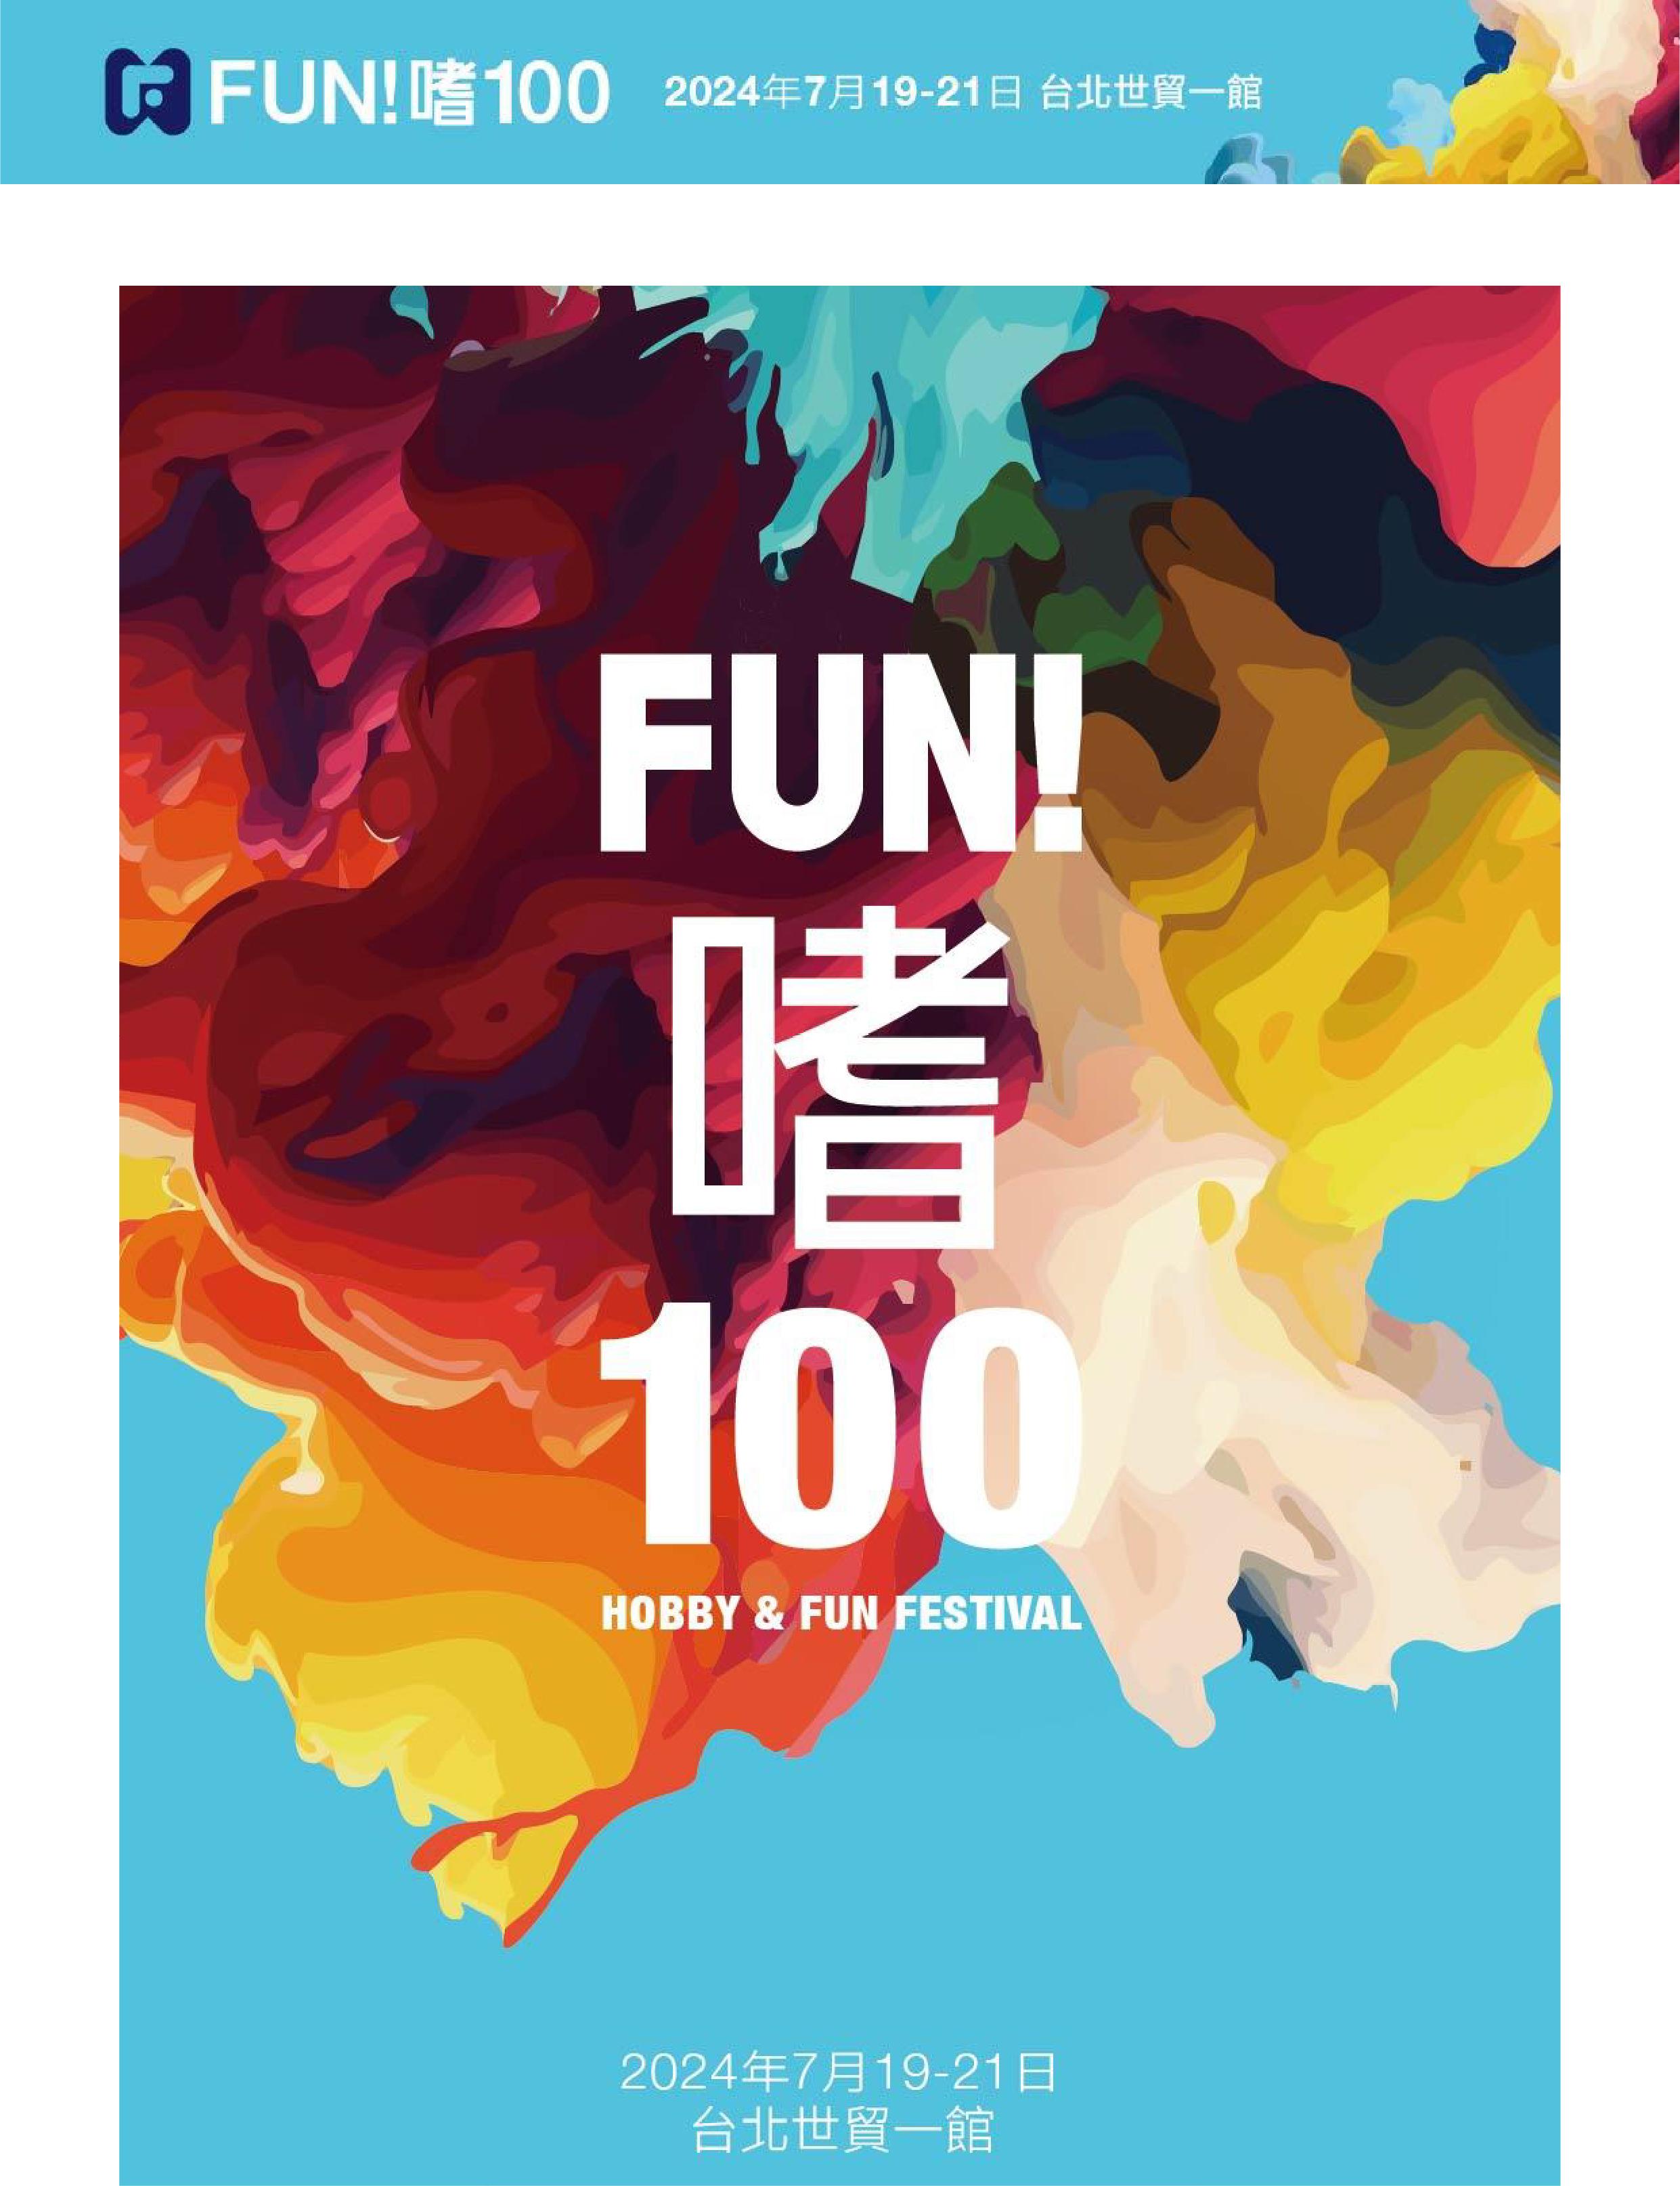 2024年7月19-21日在世貿一館「Fun!嗜100 (Hobby & Fun Festival)」展訊任意門